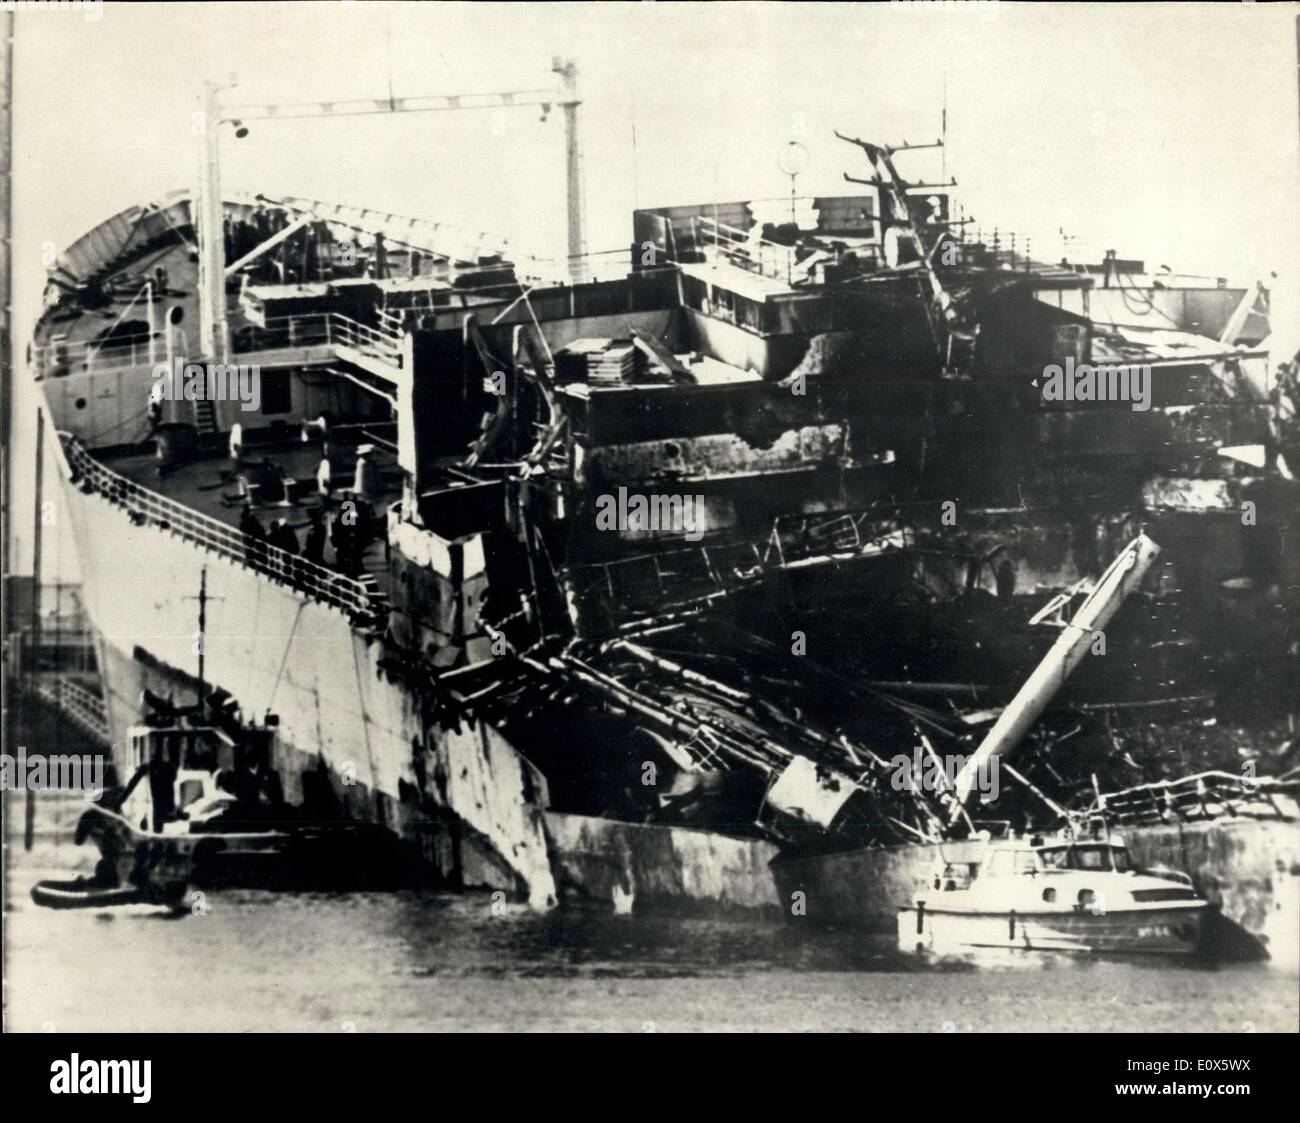 Juin 16, 1965 - Explosion déchire pétrolier norvégien en deux. Seize tués : Seize personnes ont été tuées et 20 blessées dans une explosion qui a déchiré le 22, 088 tonnes pétrolier norvégien Ronastar en deux, dans le chantier naval Verolme Cornelia, à Rotterdam. Choc de l'explosion à la Haye, windows 17 milles de là, et des milliers de personnes ont quitté leur maison de Rotterdam et la cour a été bouclée n cas d'autres explosions, La photo montre la vue sur le pétrolier norvégien Ronstar, montrant les dommages causés par l'explosion. Banque D'Images